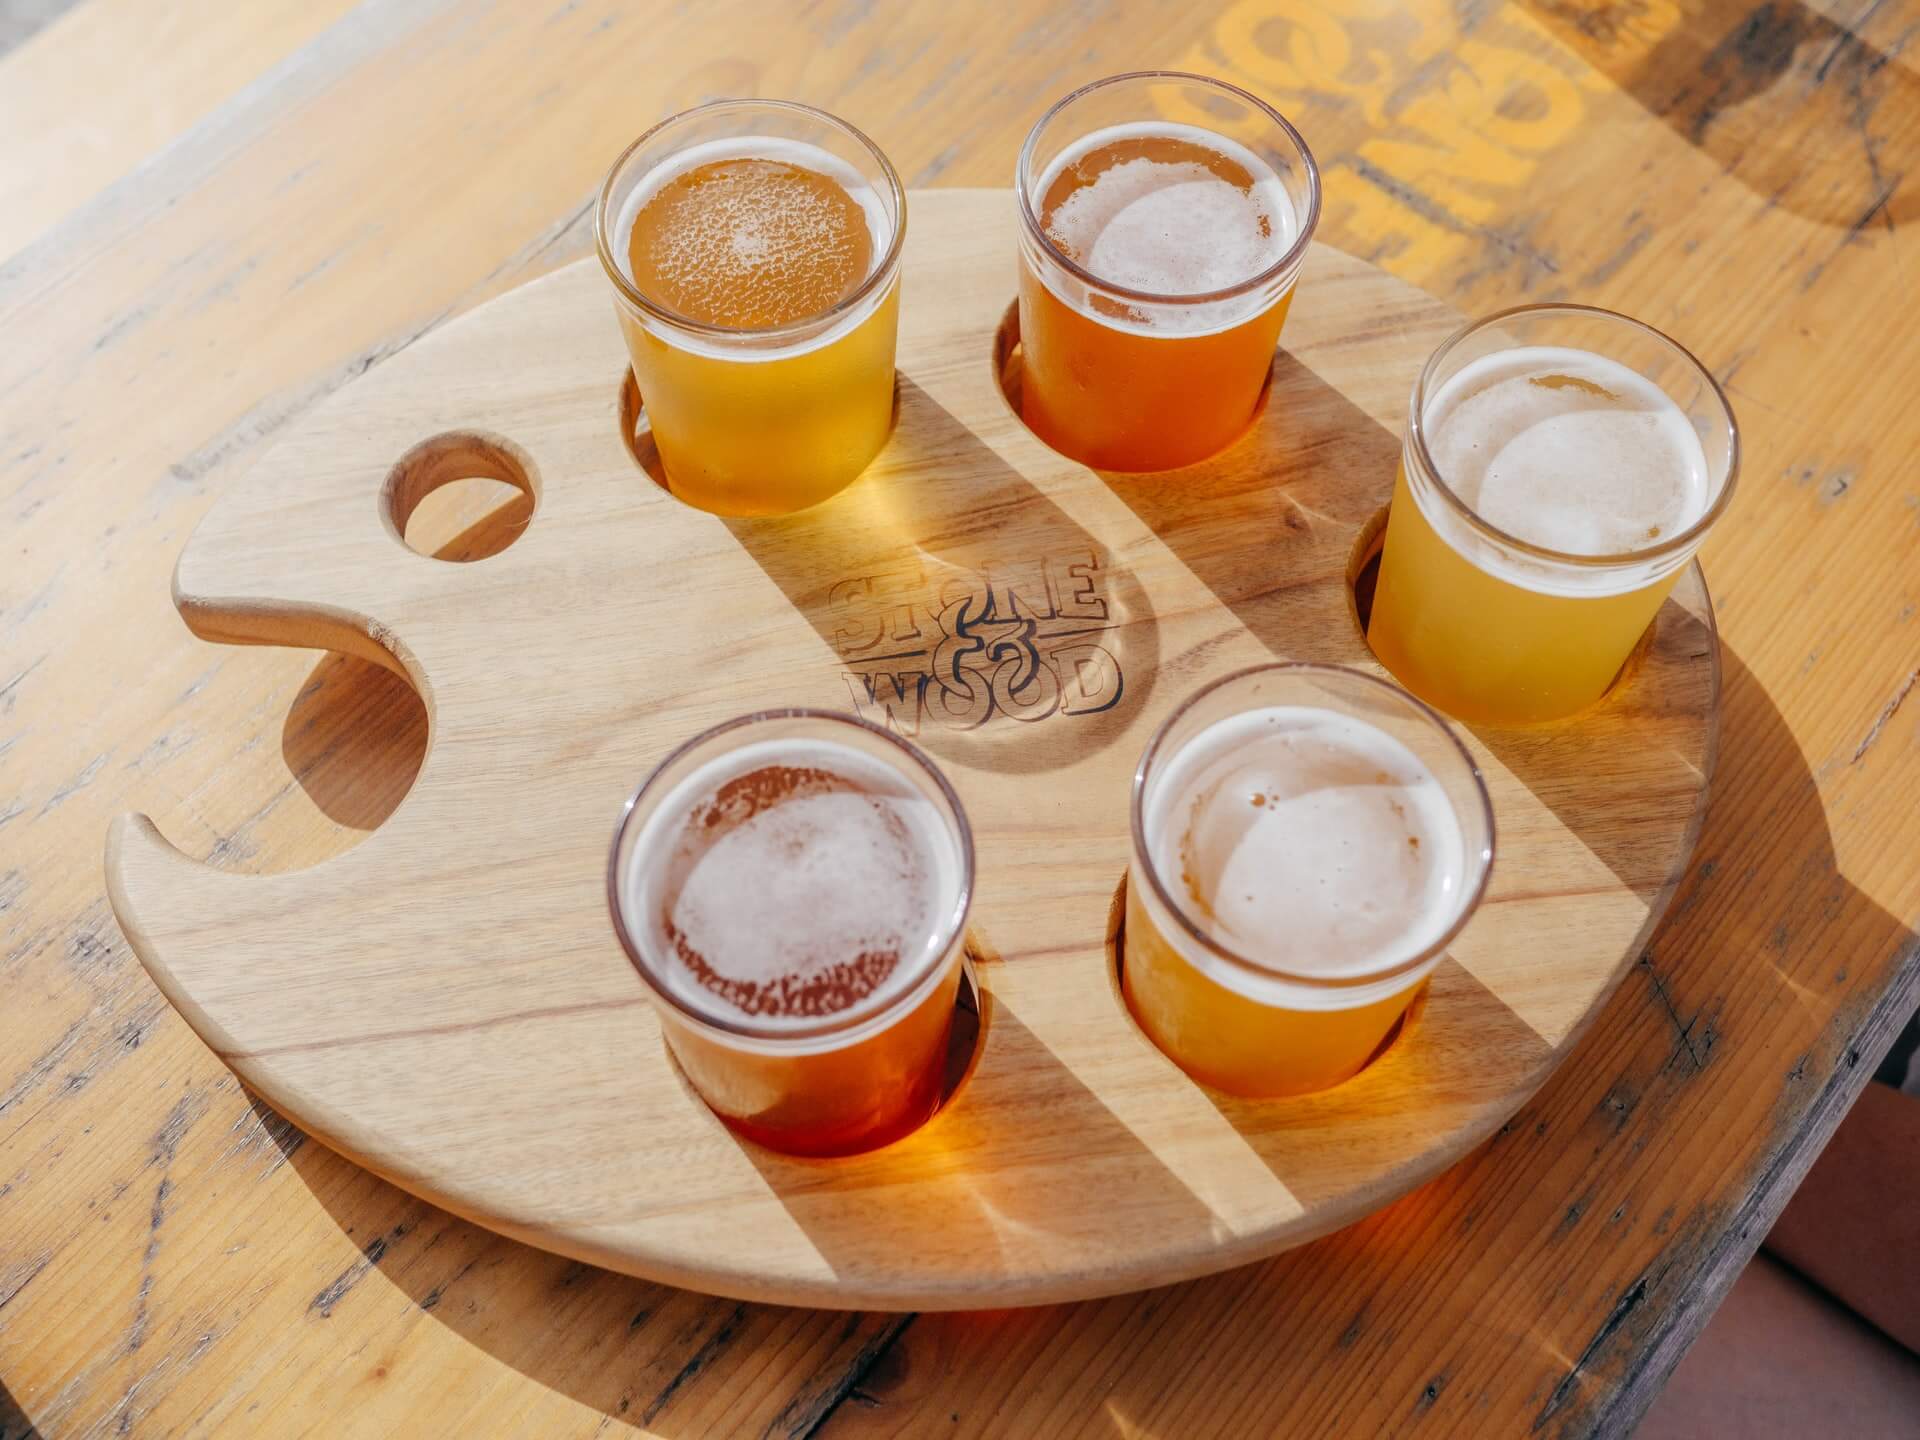 나무로된 판에 5개의 맥주가 투명한 컵에 담겨져 있는 사진